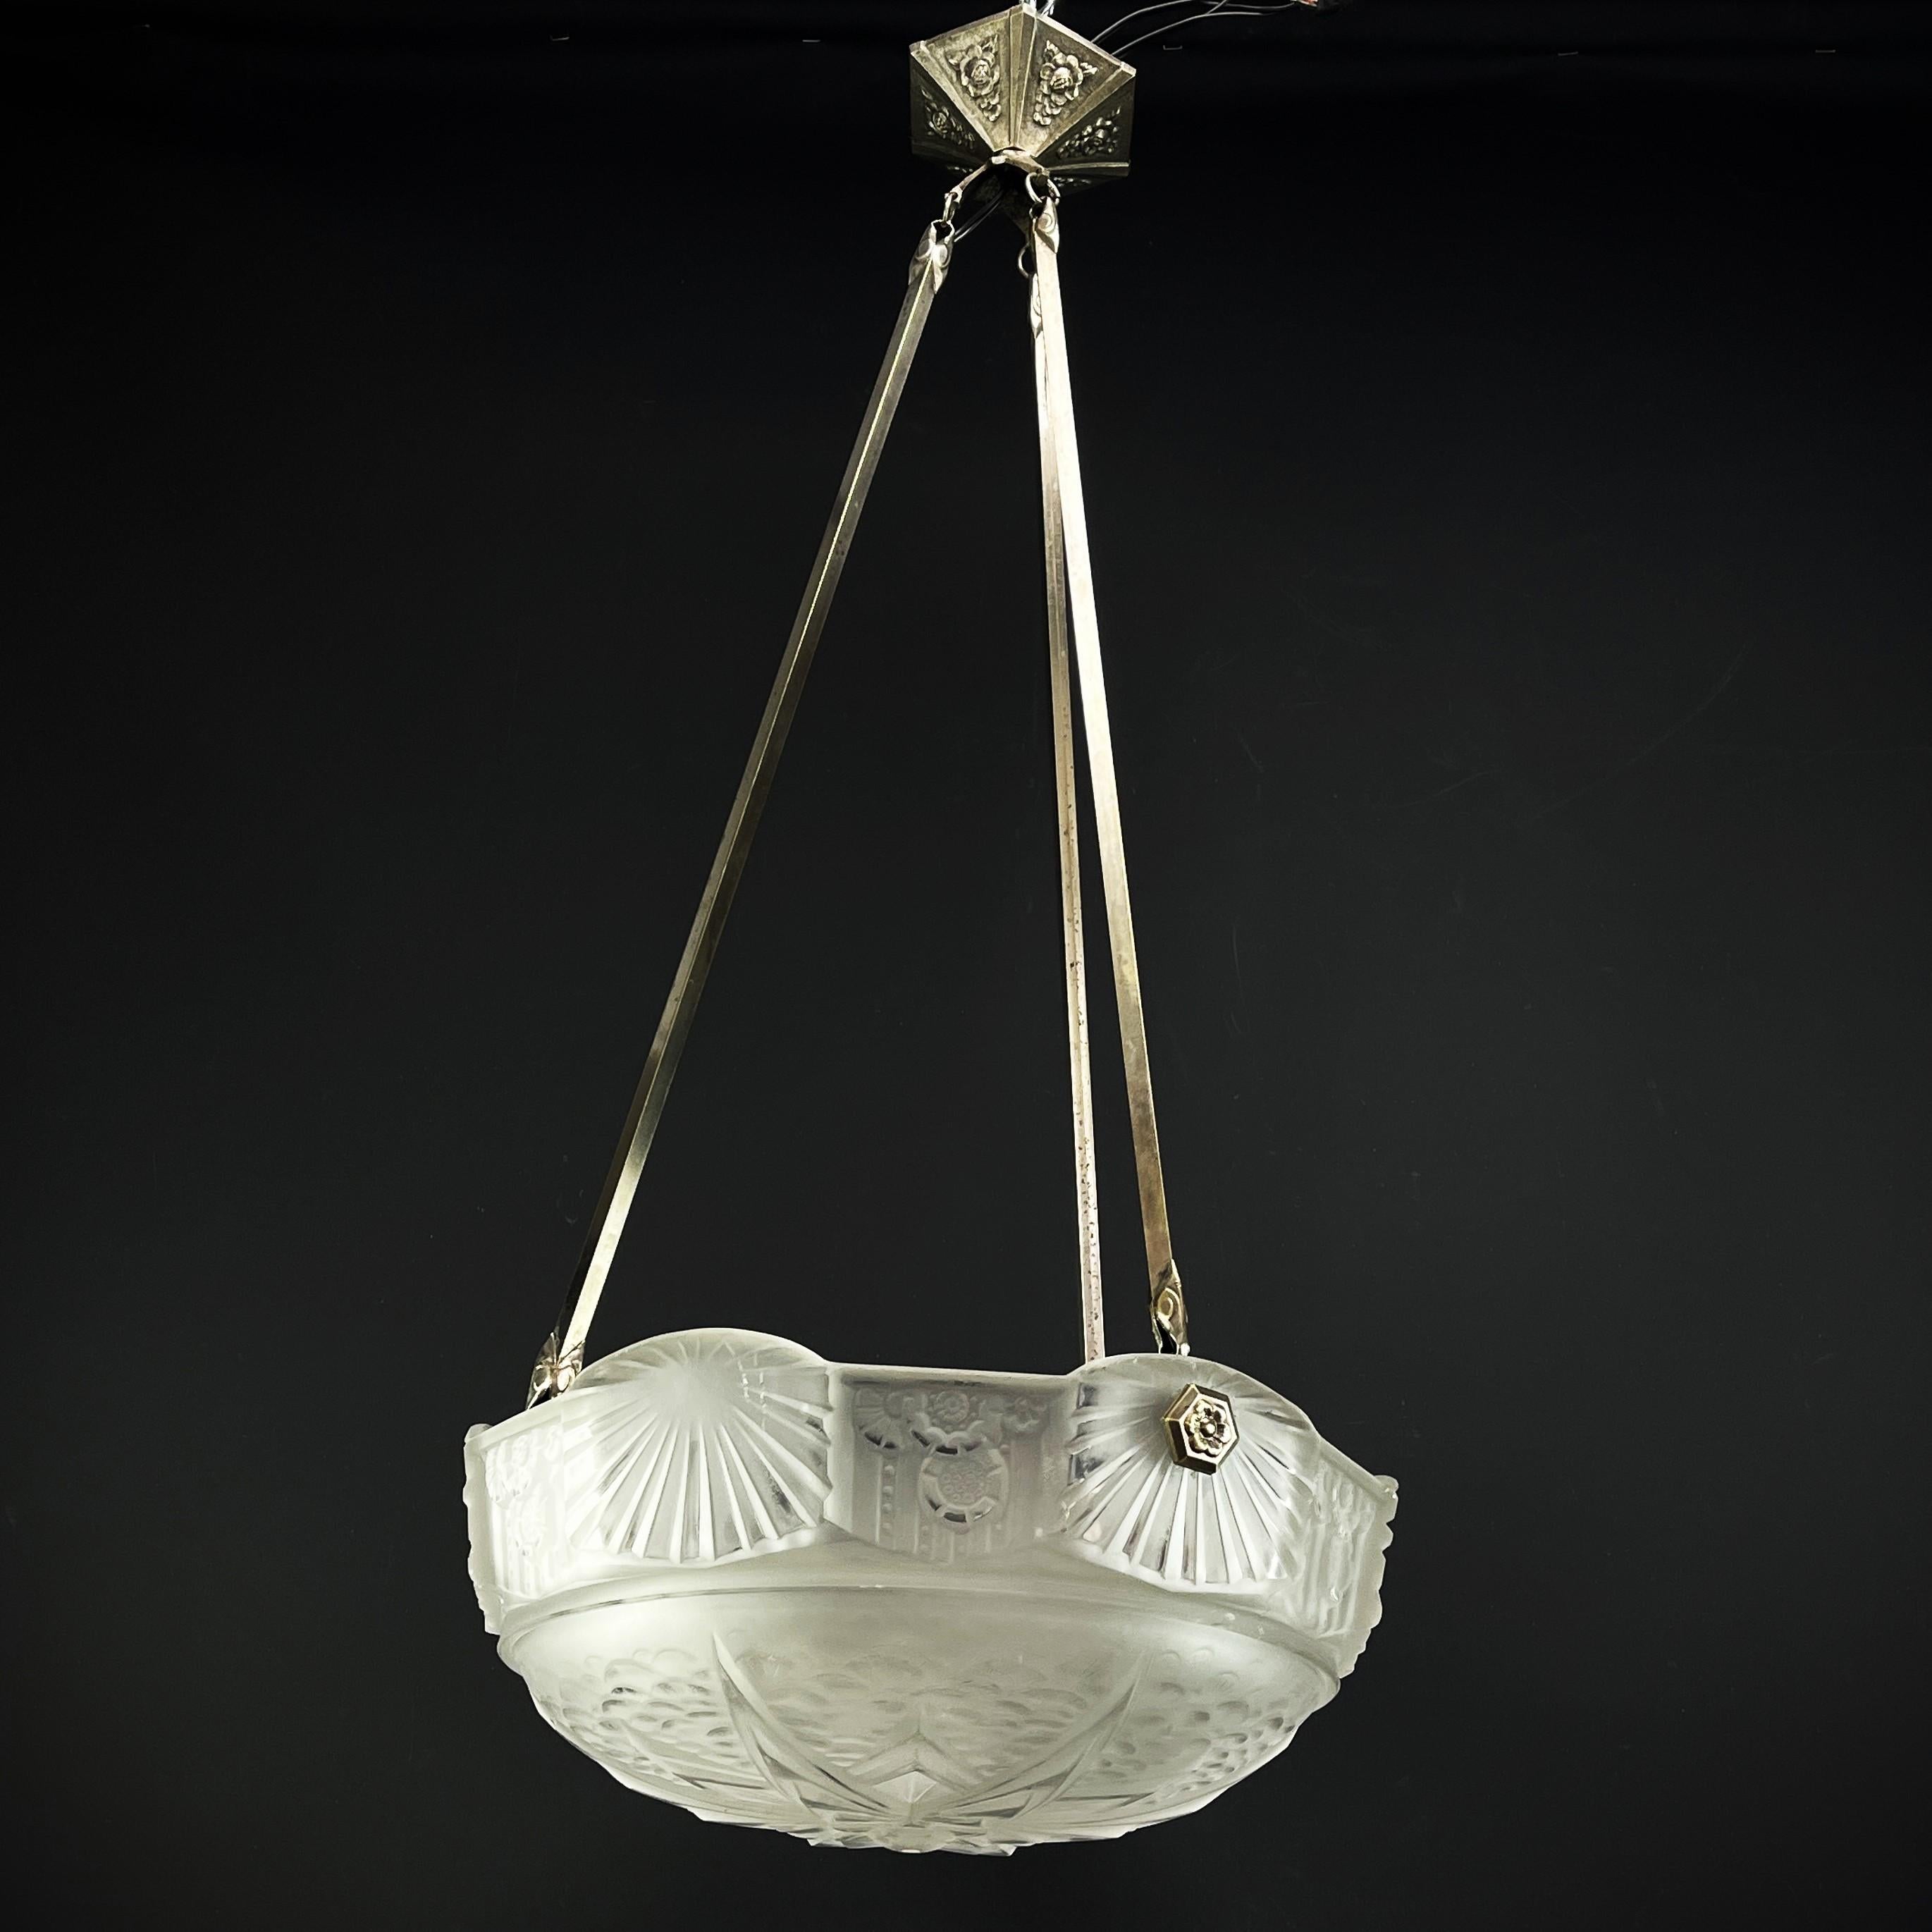 Art-Deco-Lampe von Muller Frères Lunéville 

Die ART DECO-Deckenleuchte ist ein bemerkenswertes Beispiel für die Handwerkskunst und den Stil des frühen 20. Jahrhunderts. 

Der Schriftzug Muller Frères Lunéville